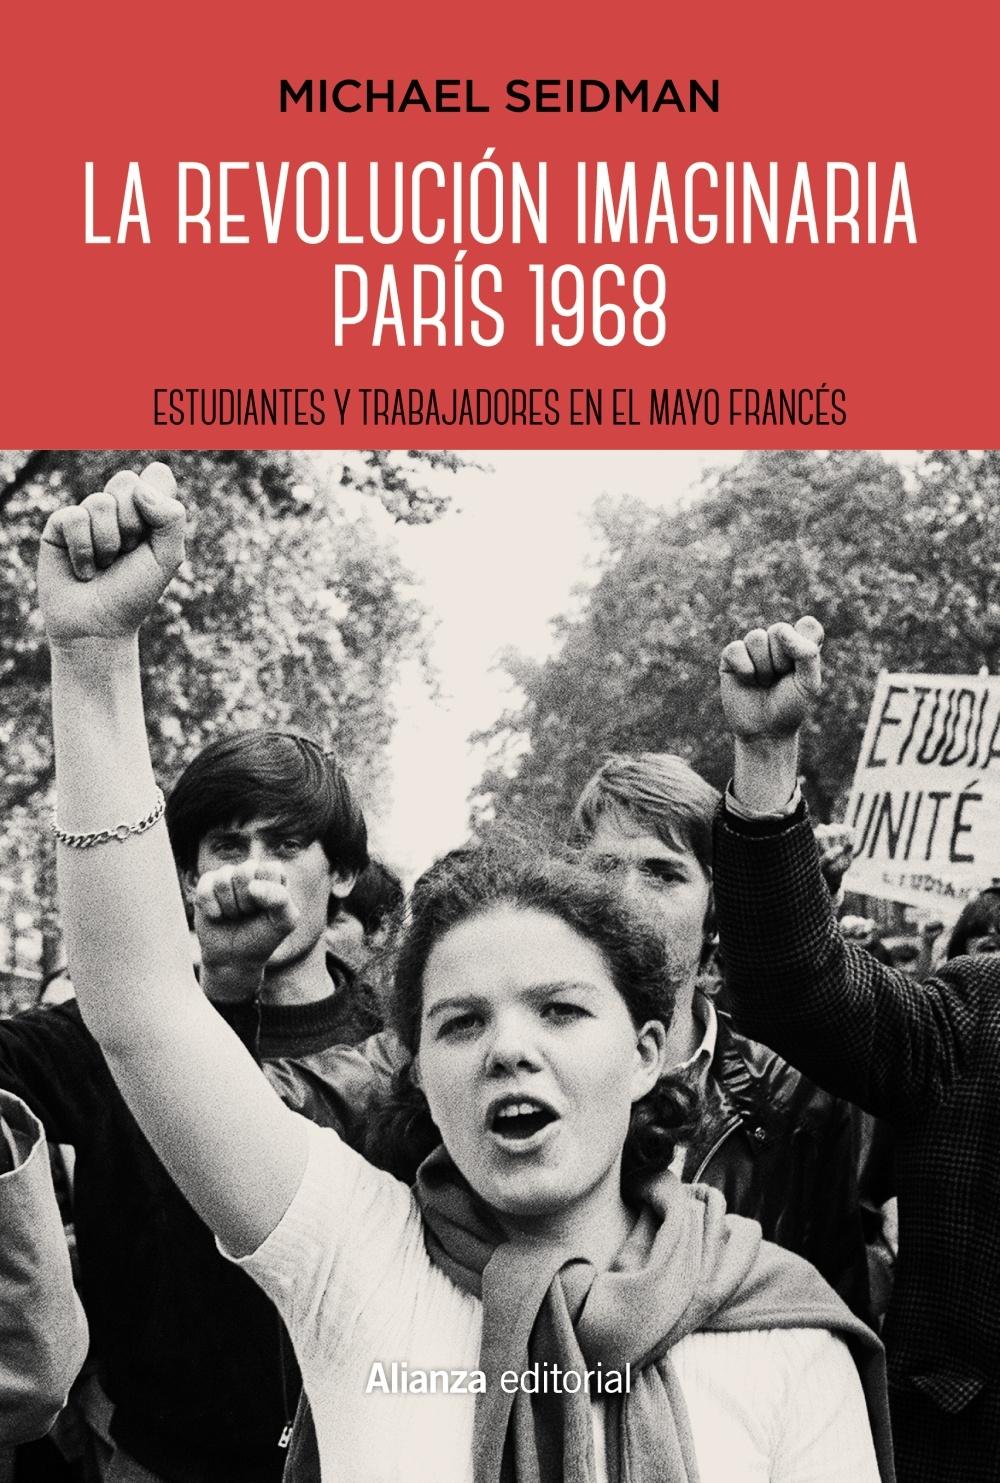 La revolución imaginaria. París 1968 "Estudiantes y trabajadores en el Mayo francés"